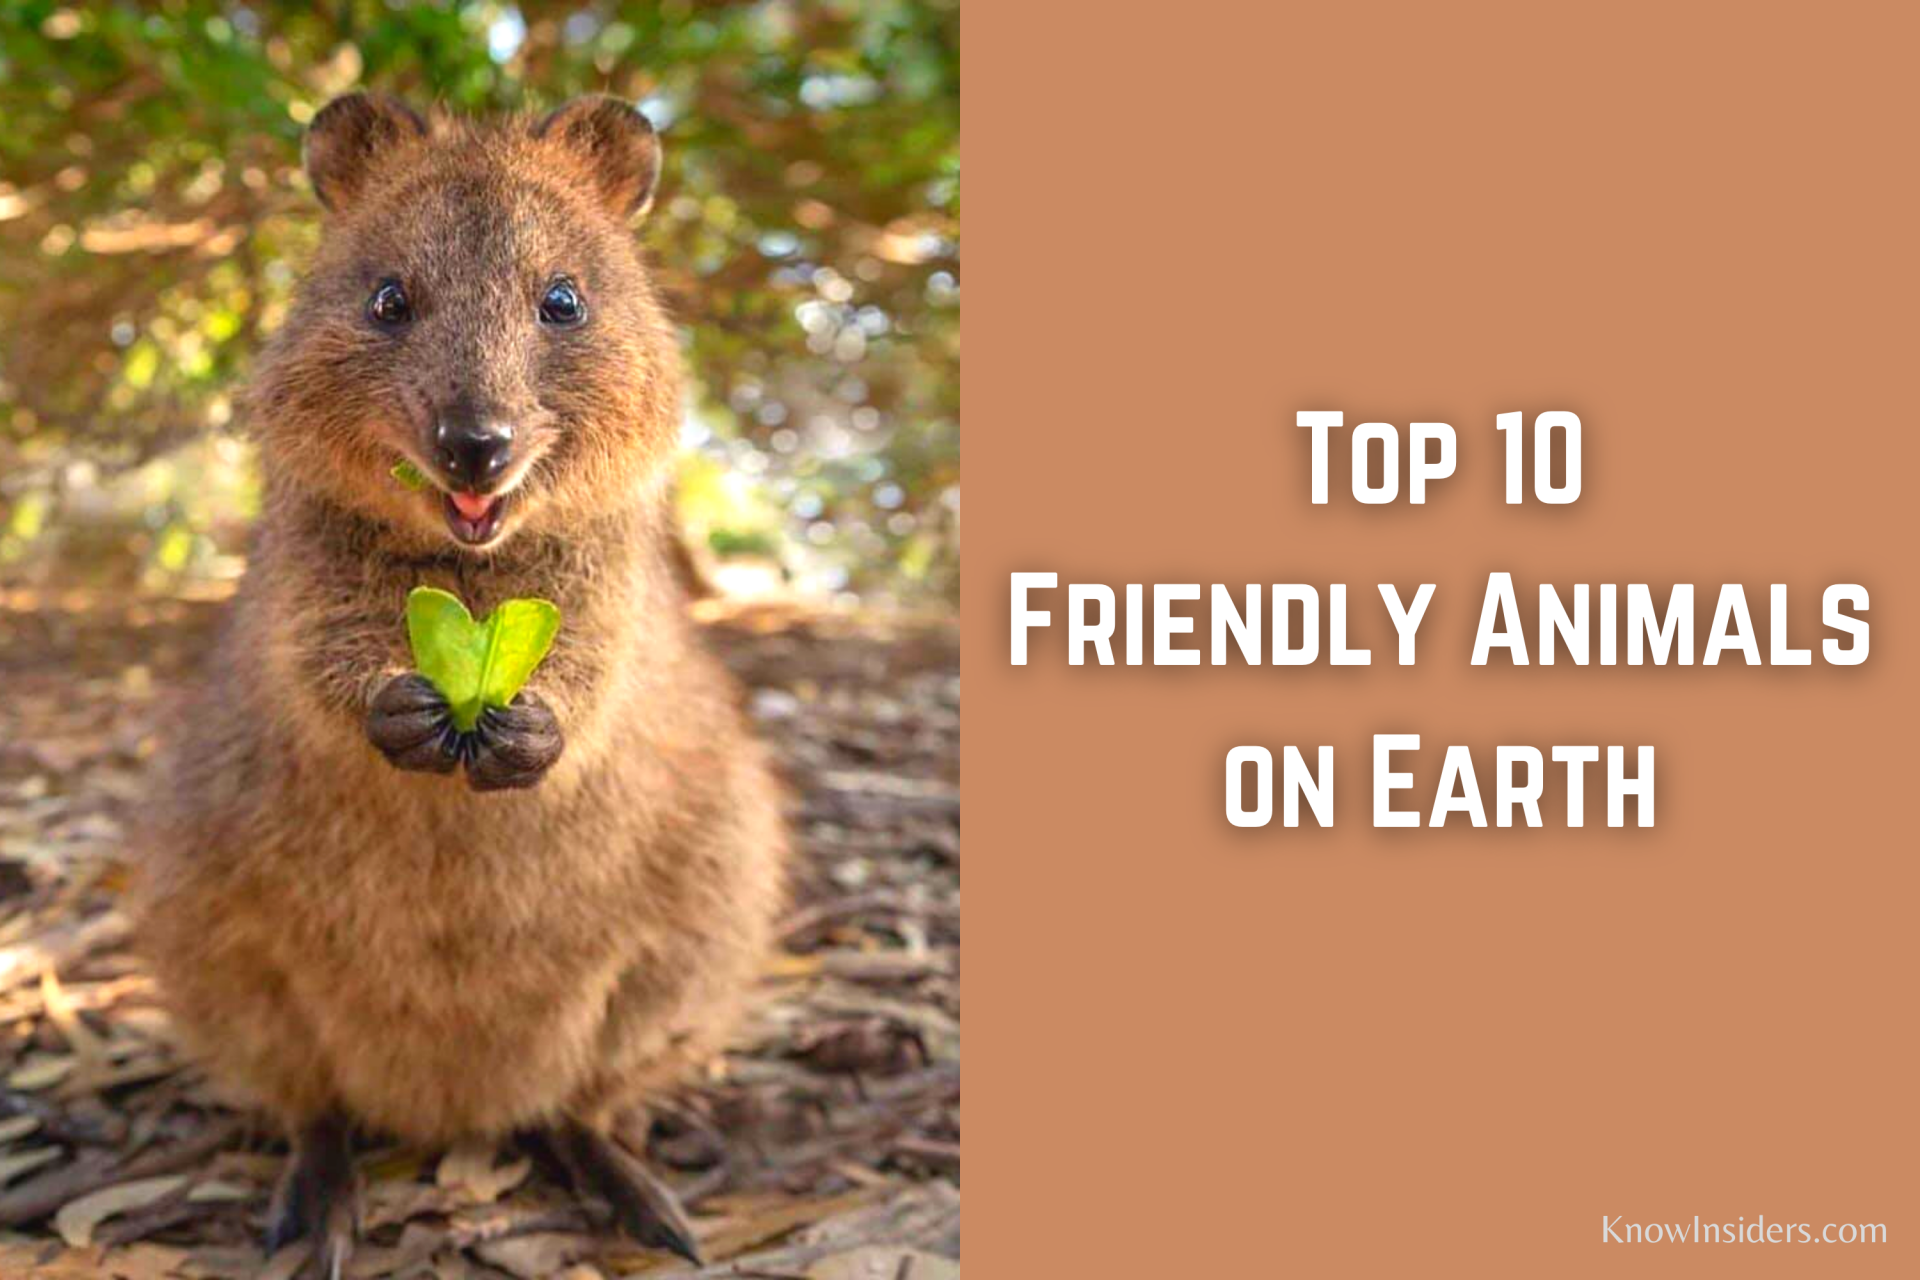 Top 10 Friendliest Animals in the World